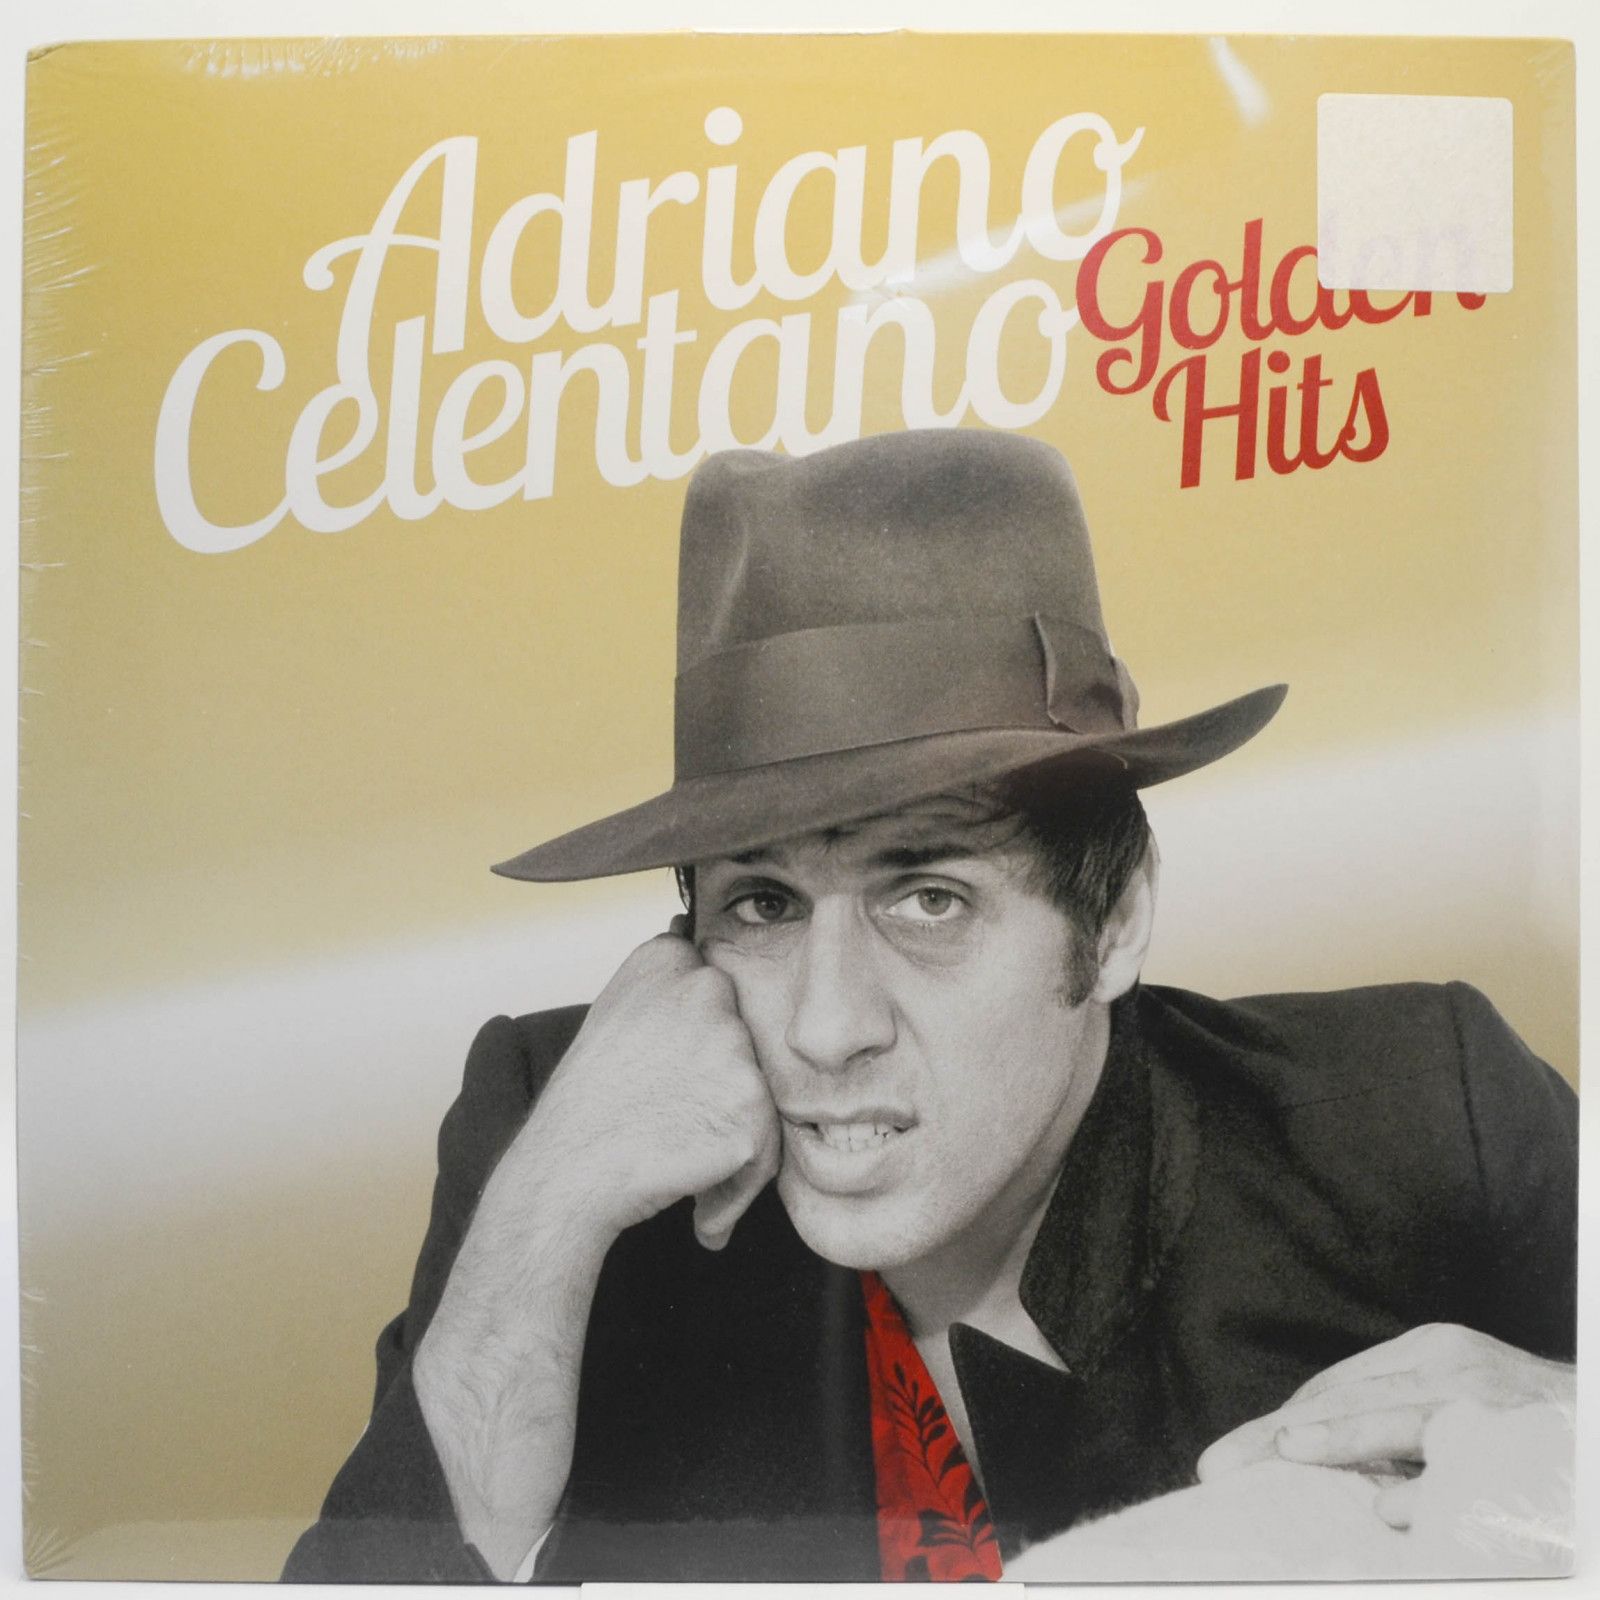 Adriano Celentano — Golden Hits, 2015